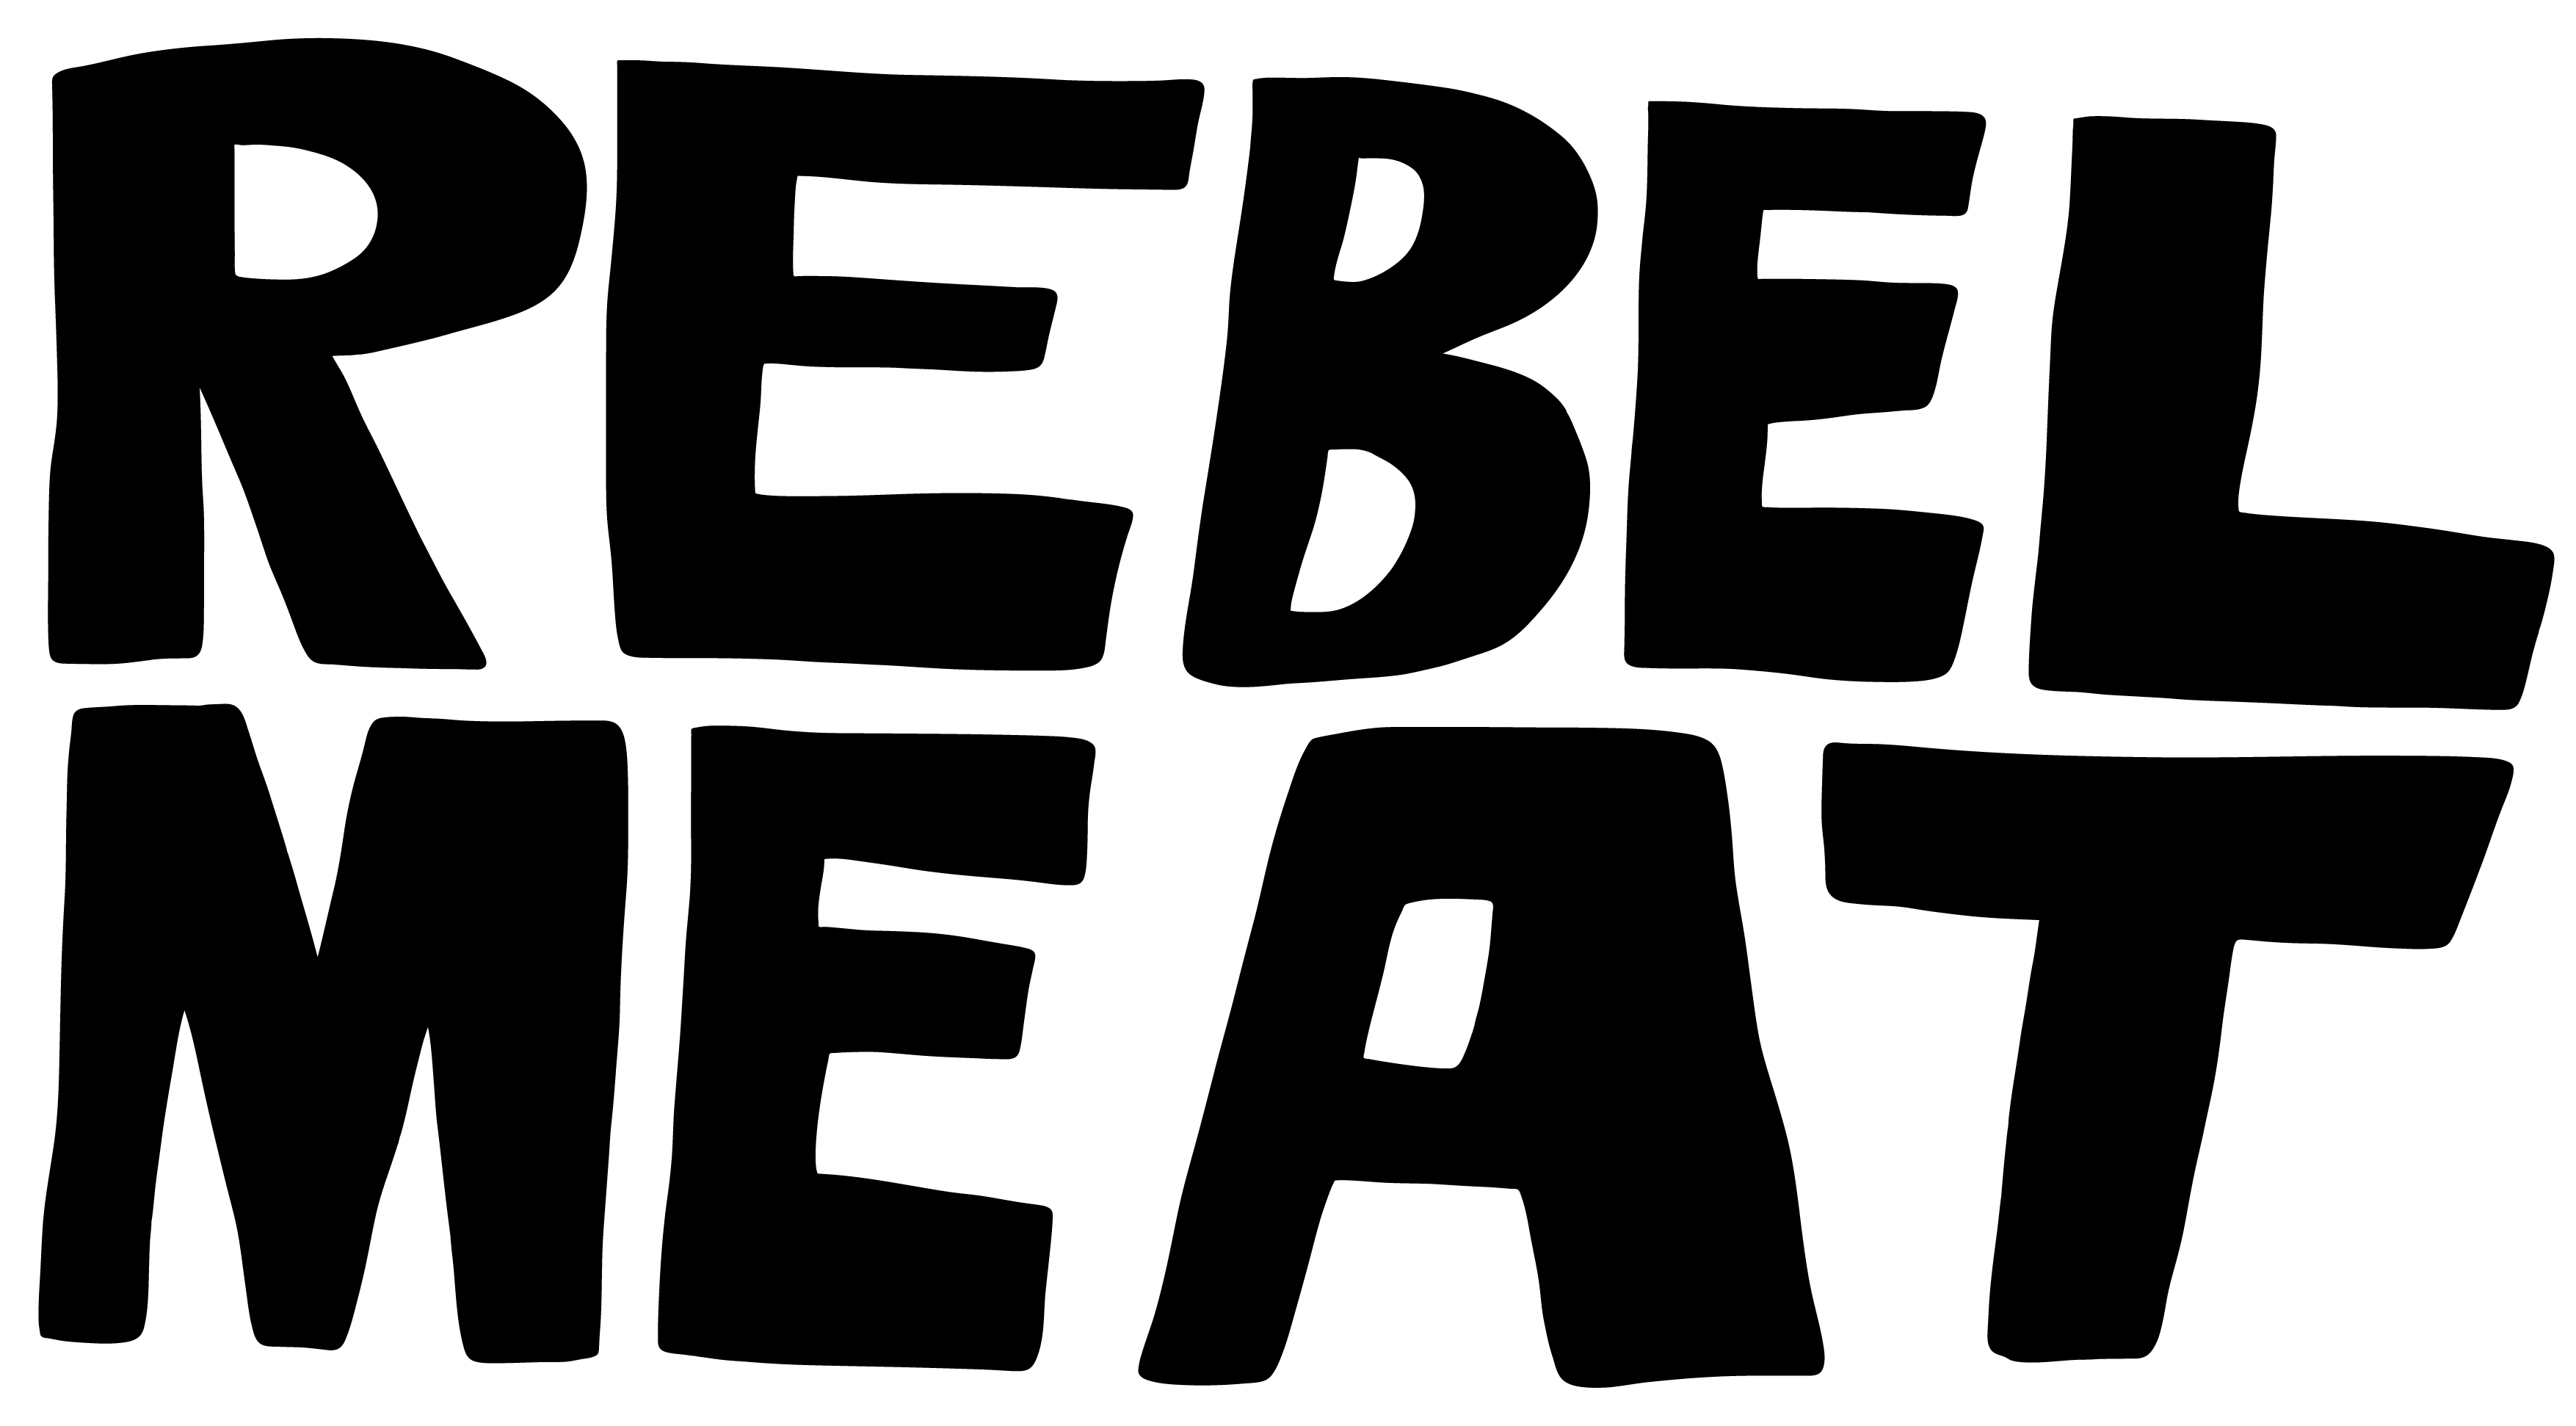 Rebe Meat GmbH